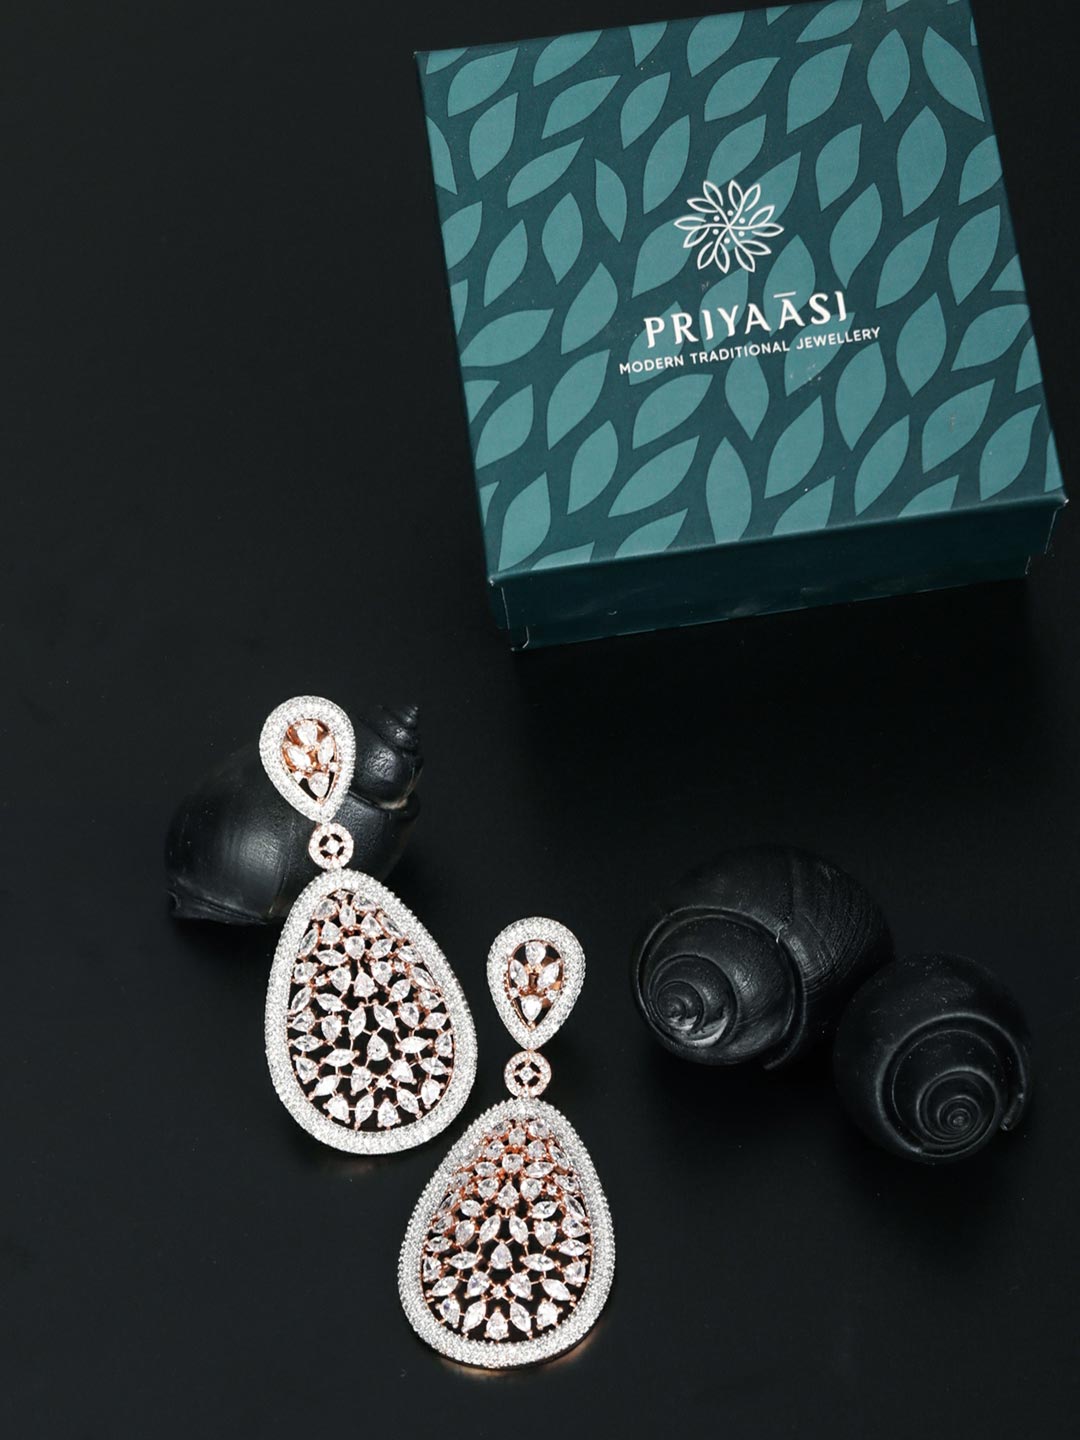 Buy White Earrings for Women by Jewels galaxy Online | Ajio.com